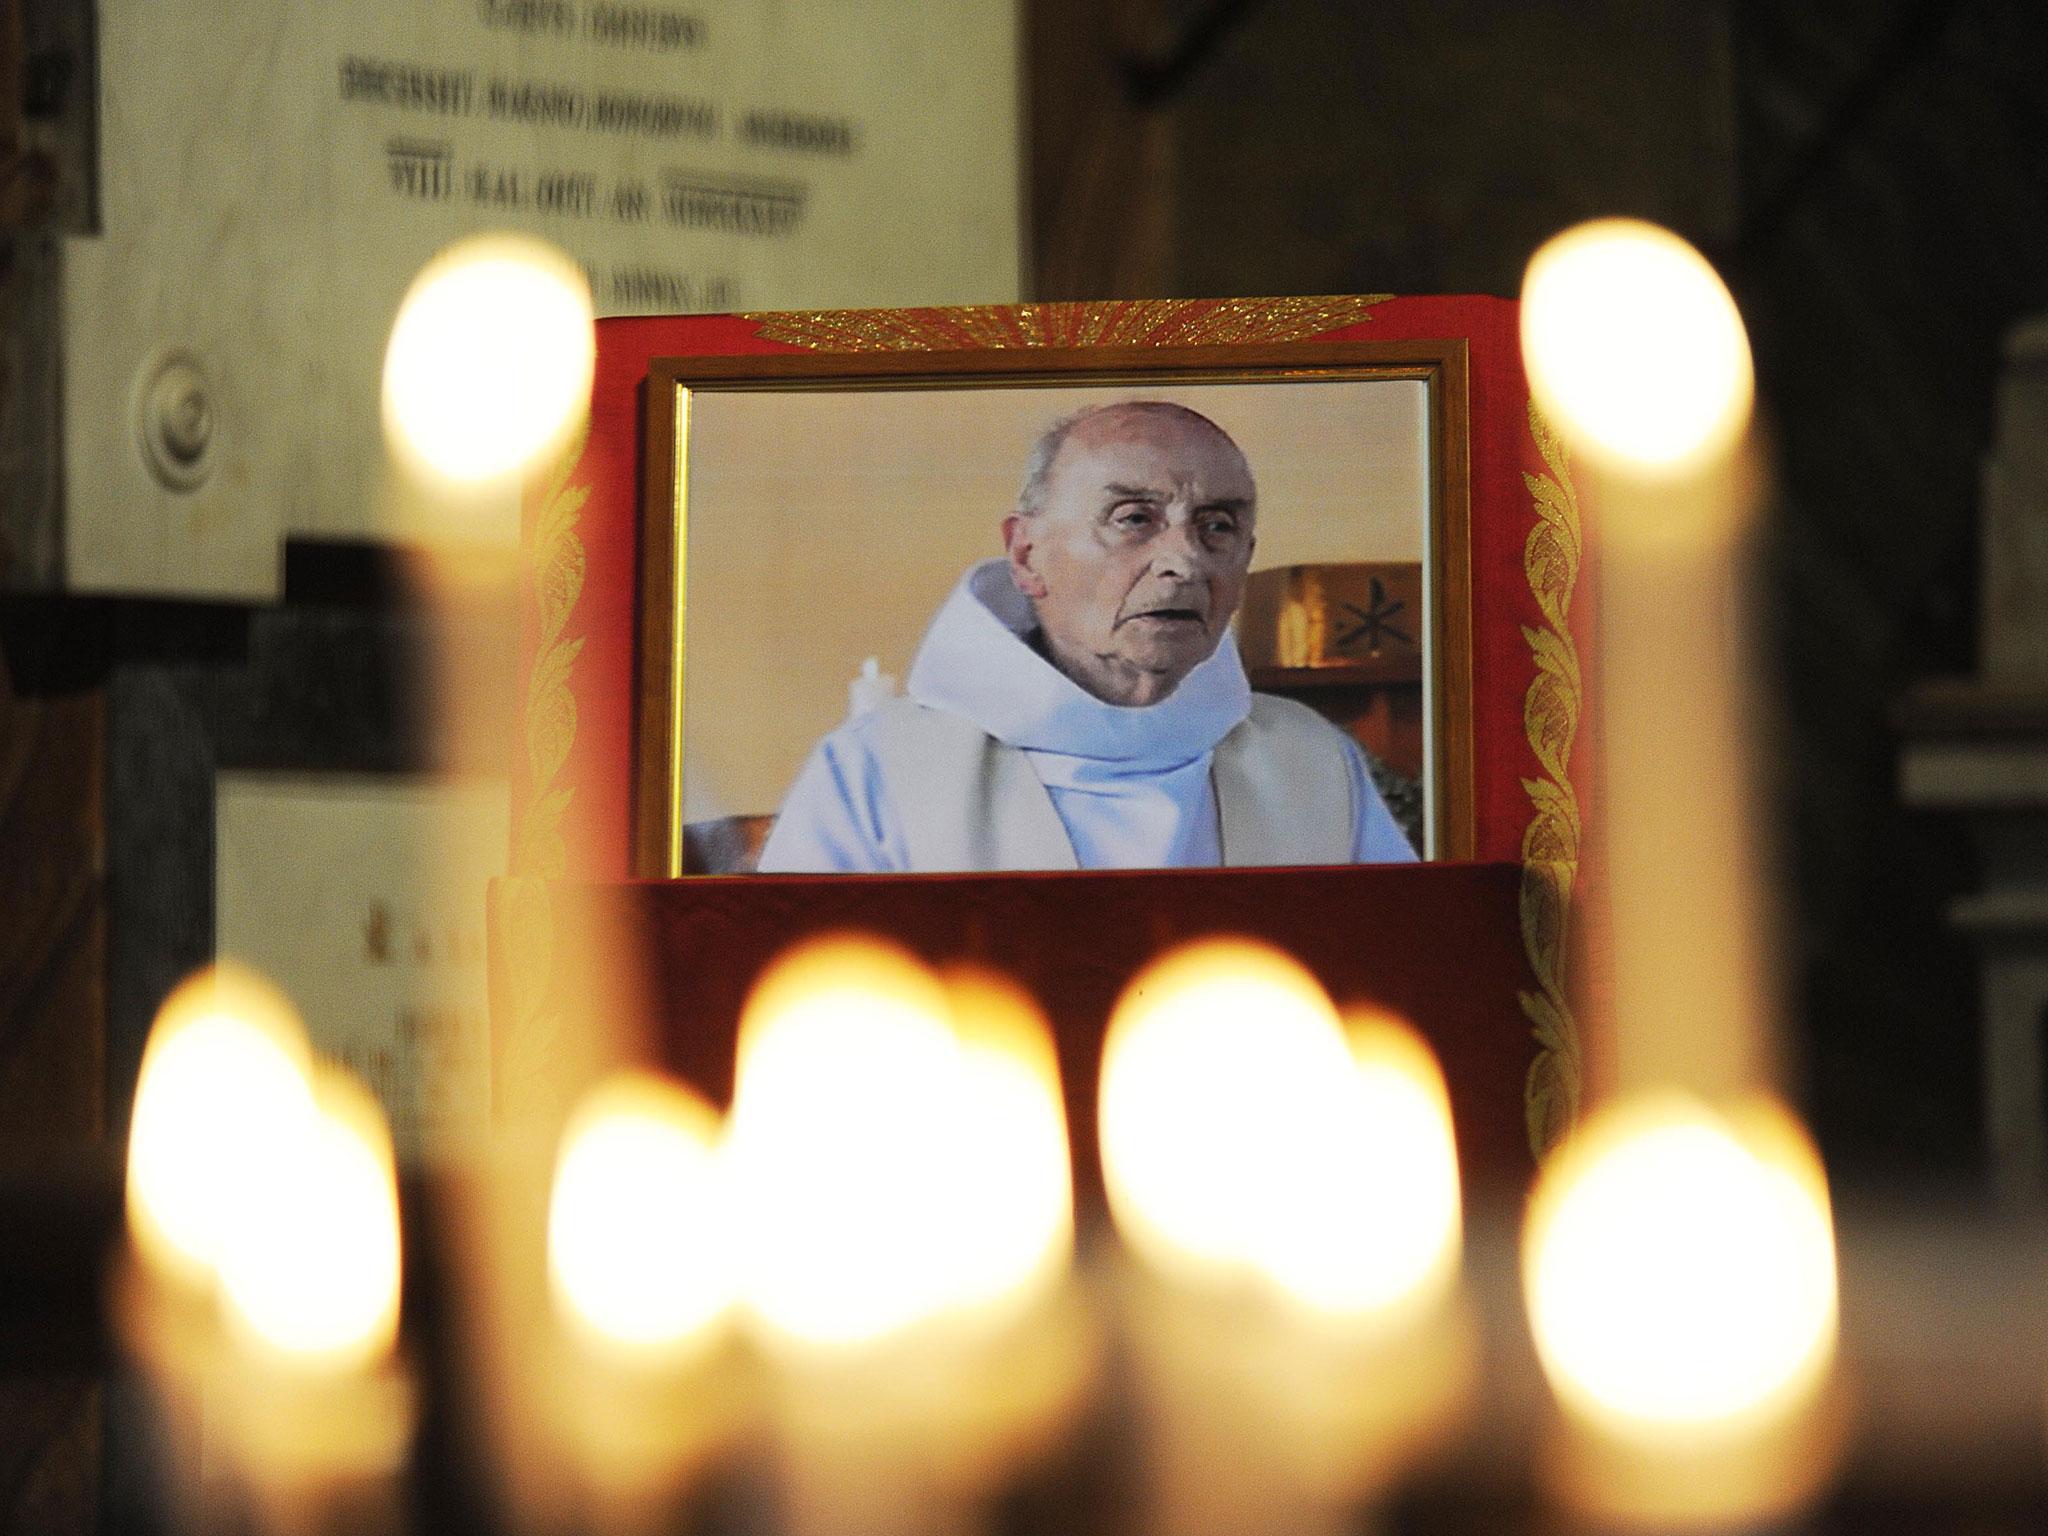 The murder of Father Jacques Hamel sent shockwaves through France